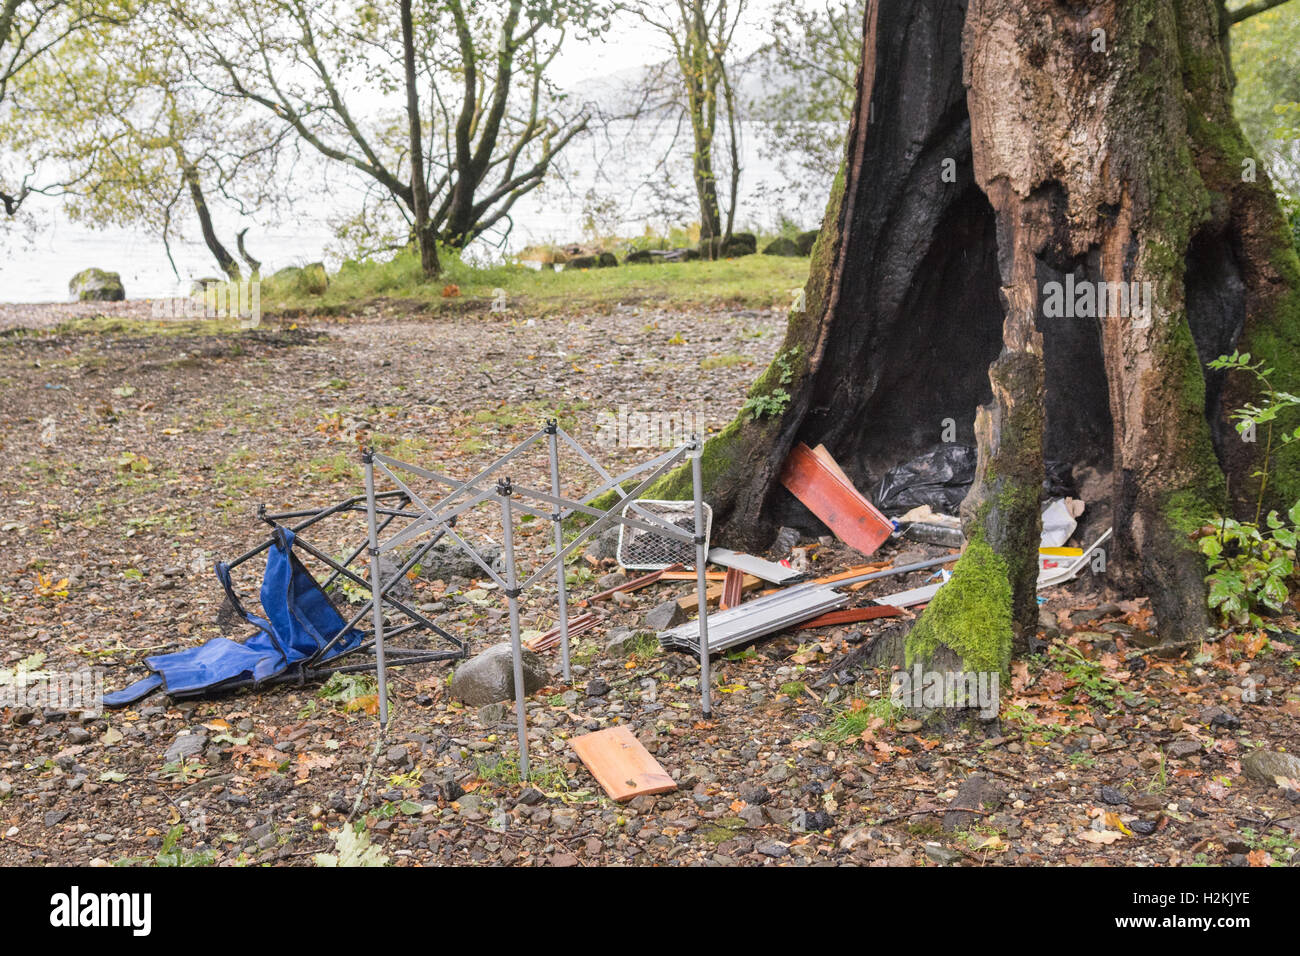 Probleme - asoziales Verhalten und Umweltschäden - am westlichen Ufer des Loch Lomond Wild camping verbrannt Schottland - Müll und Schutt Baum Stockfoto